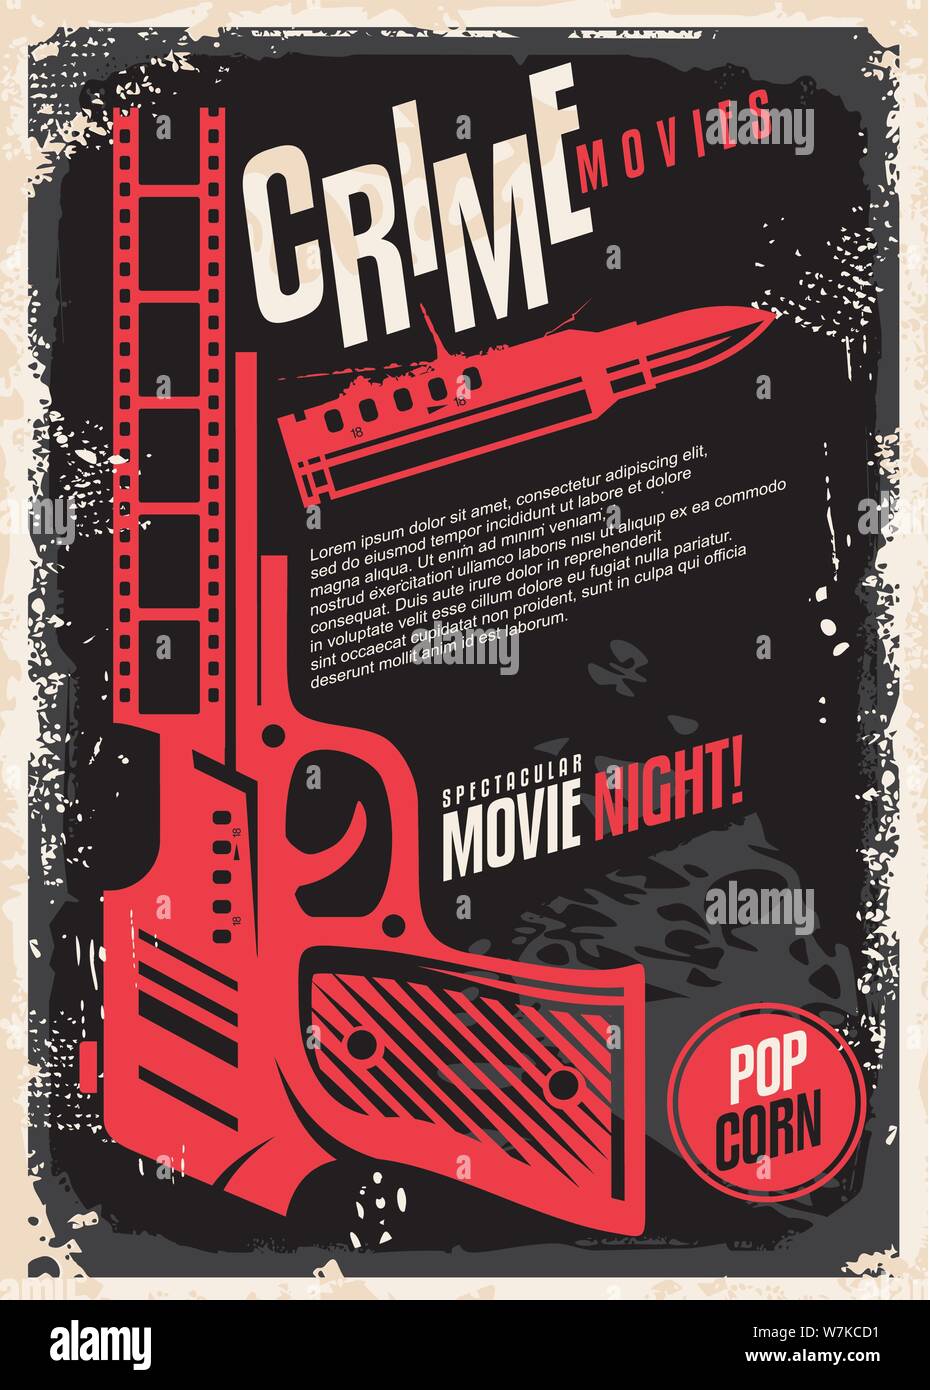 Películas crimen espectacular noche de película retro diseño de póster. Cine flyer con pistola y la bala en el oscuro fondo de textura. Ilustración del Vector